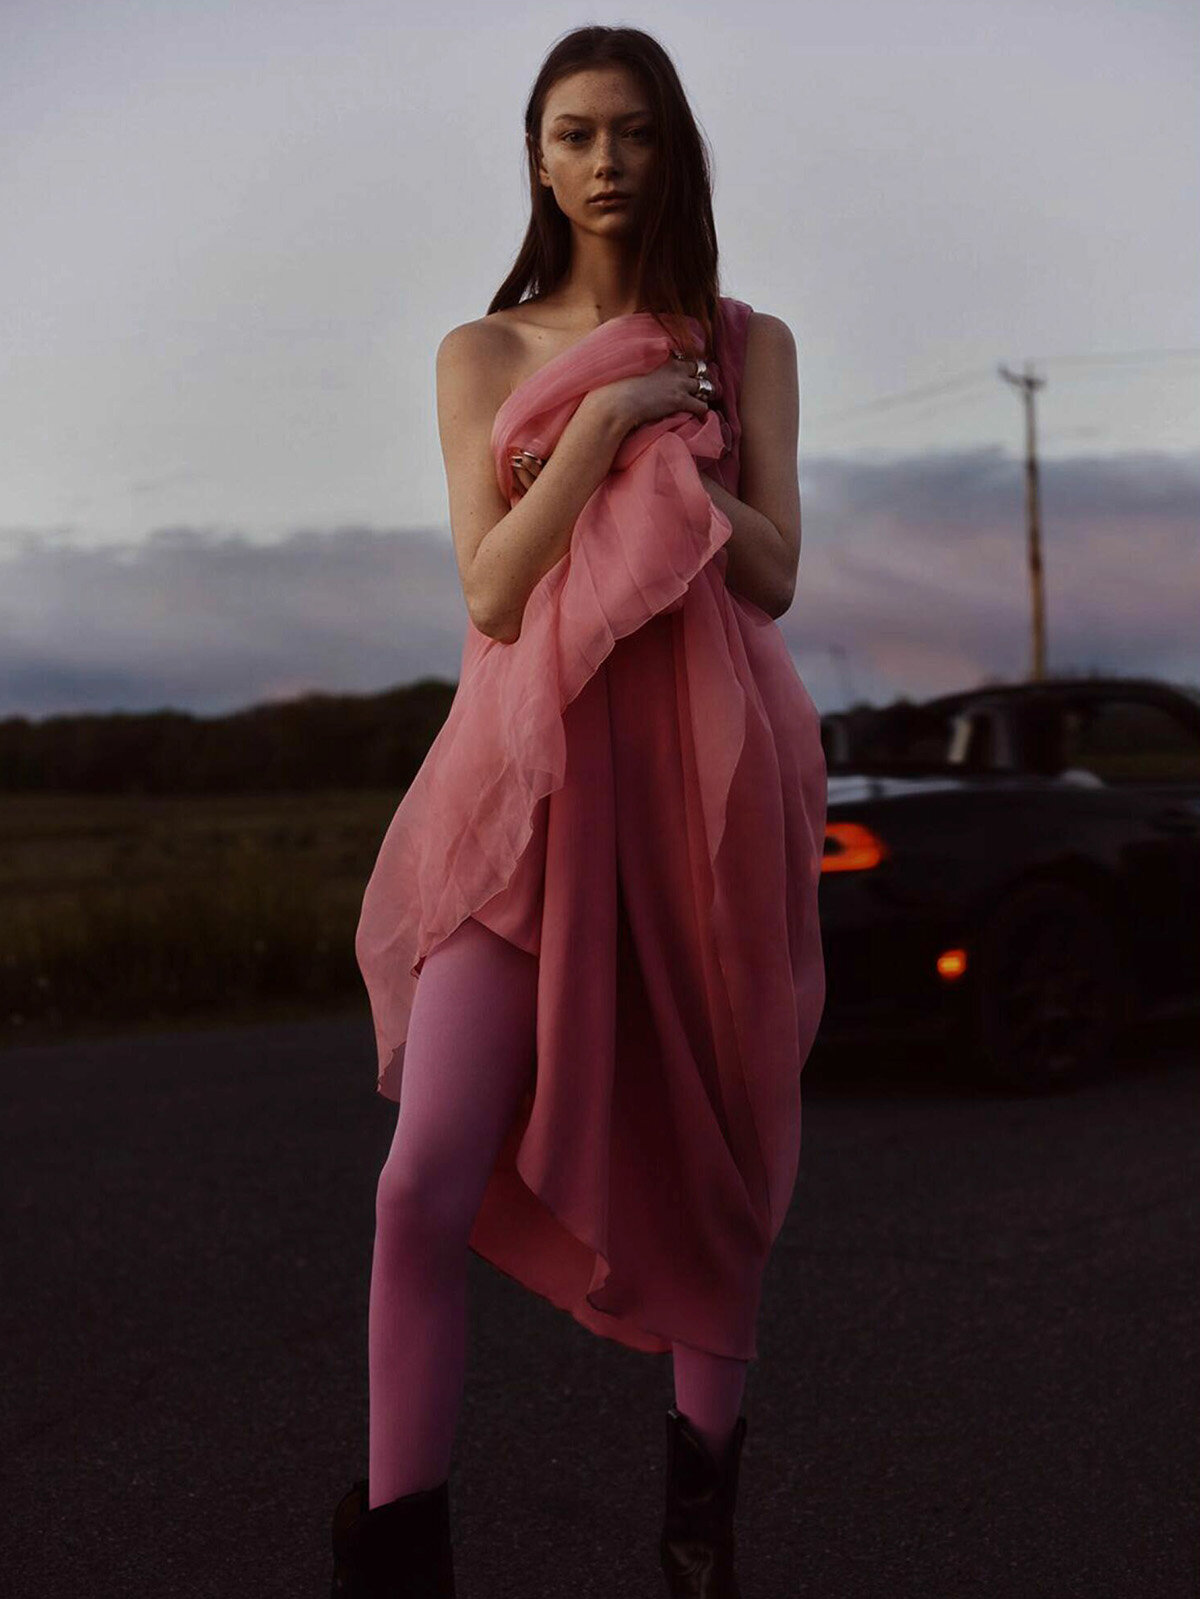 Sara-Grace-Wallerstedt-by-Geordie-Wood-for-Vogue-Australia-July-2021-10.jpg